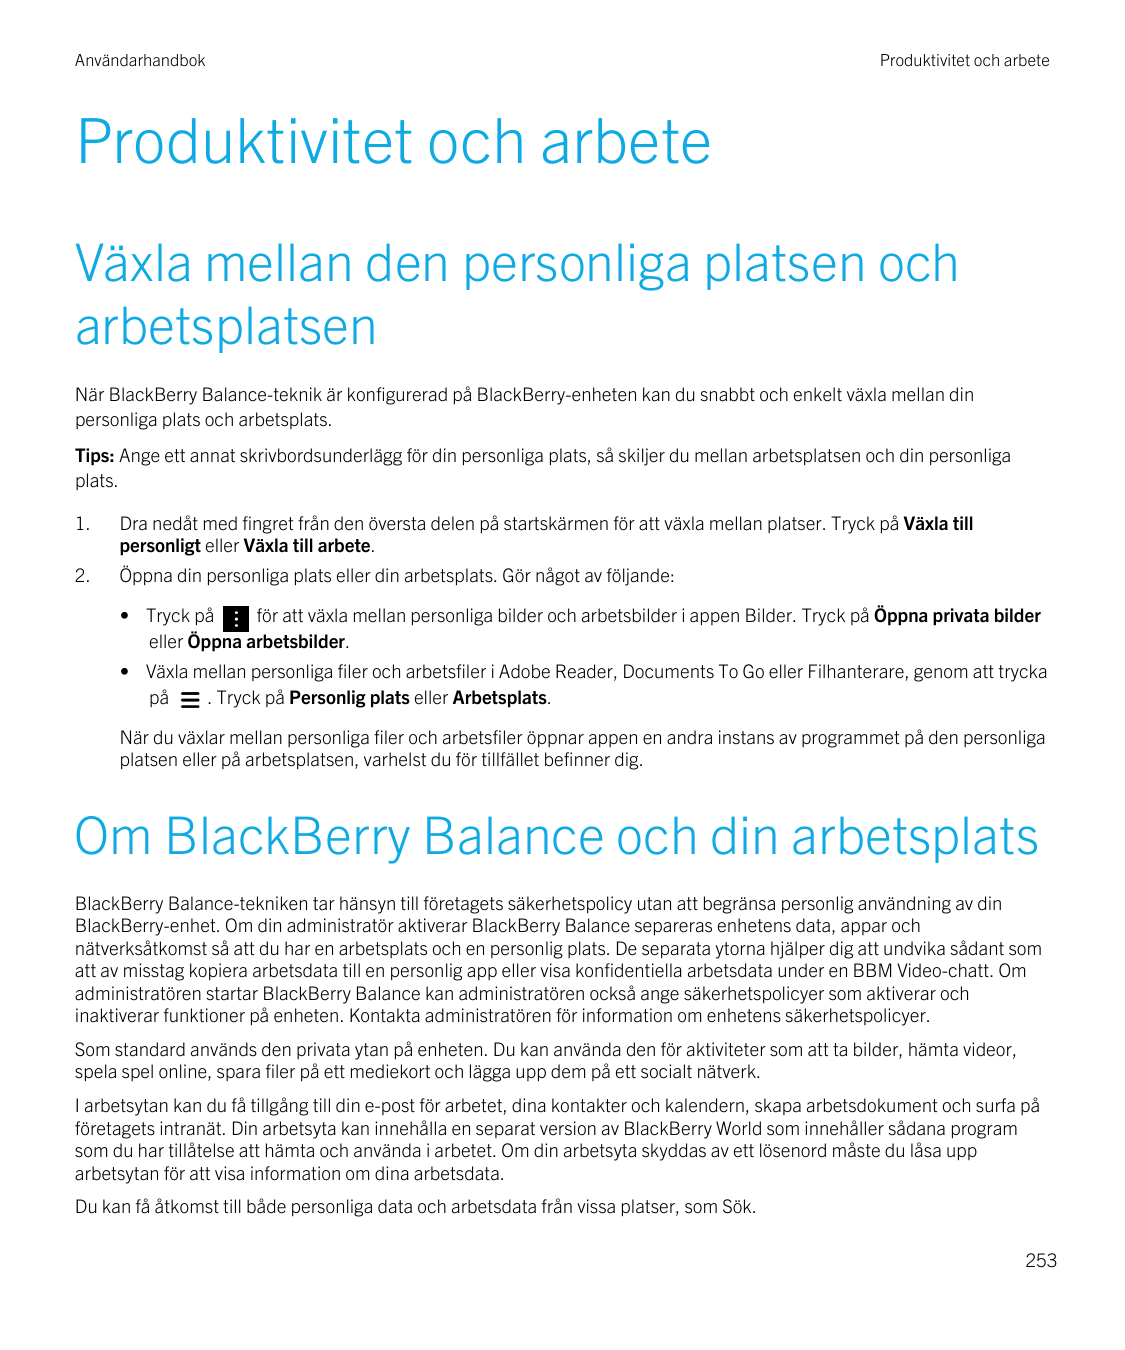 AnvändarhandbokProduktivitet och arbeteProduktivitet och arbeteVäxla mellan den personliga platsen ocharbetsplatsenNär BlackBerr